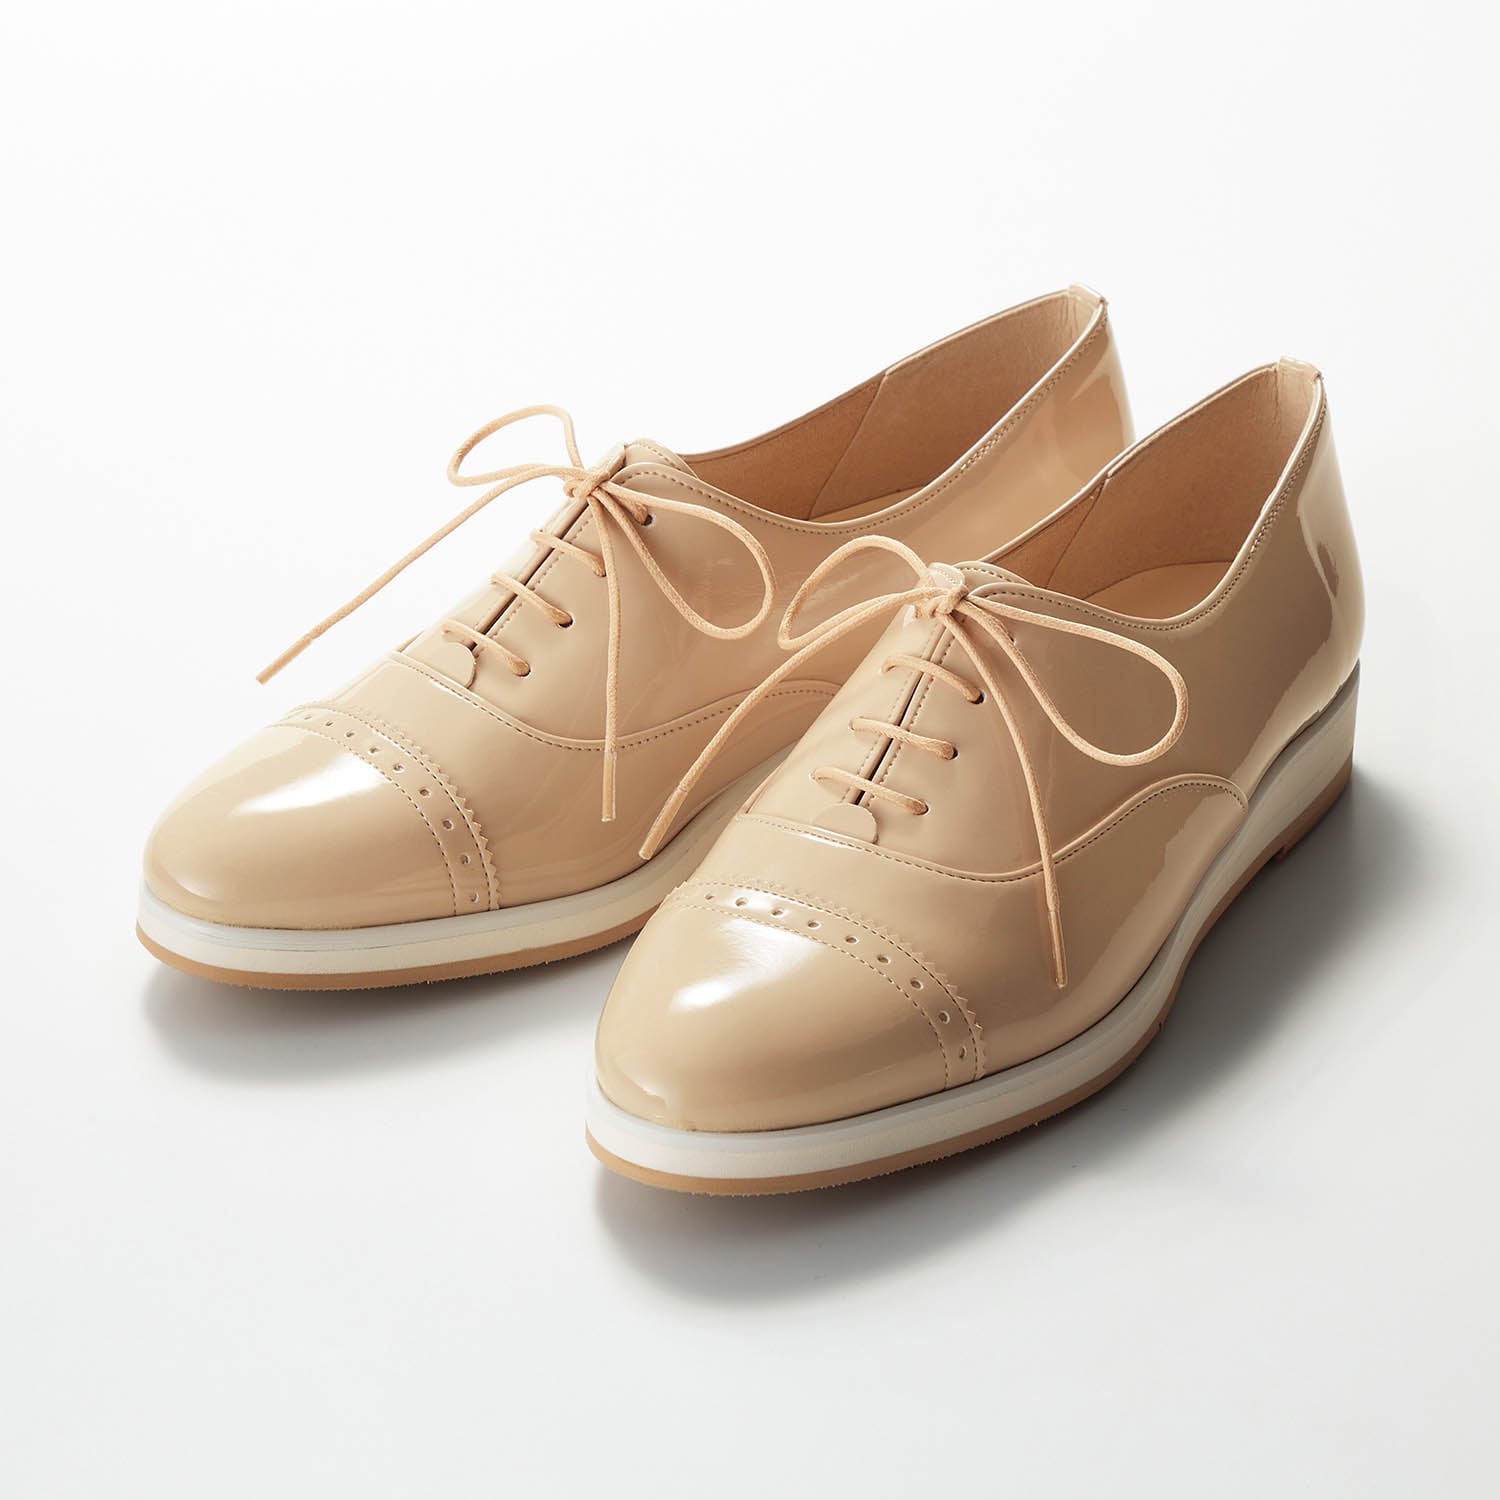 やわらかマニッシュシューズ 24.5 日本製の履きやすい靴 ブラウン